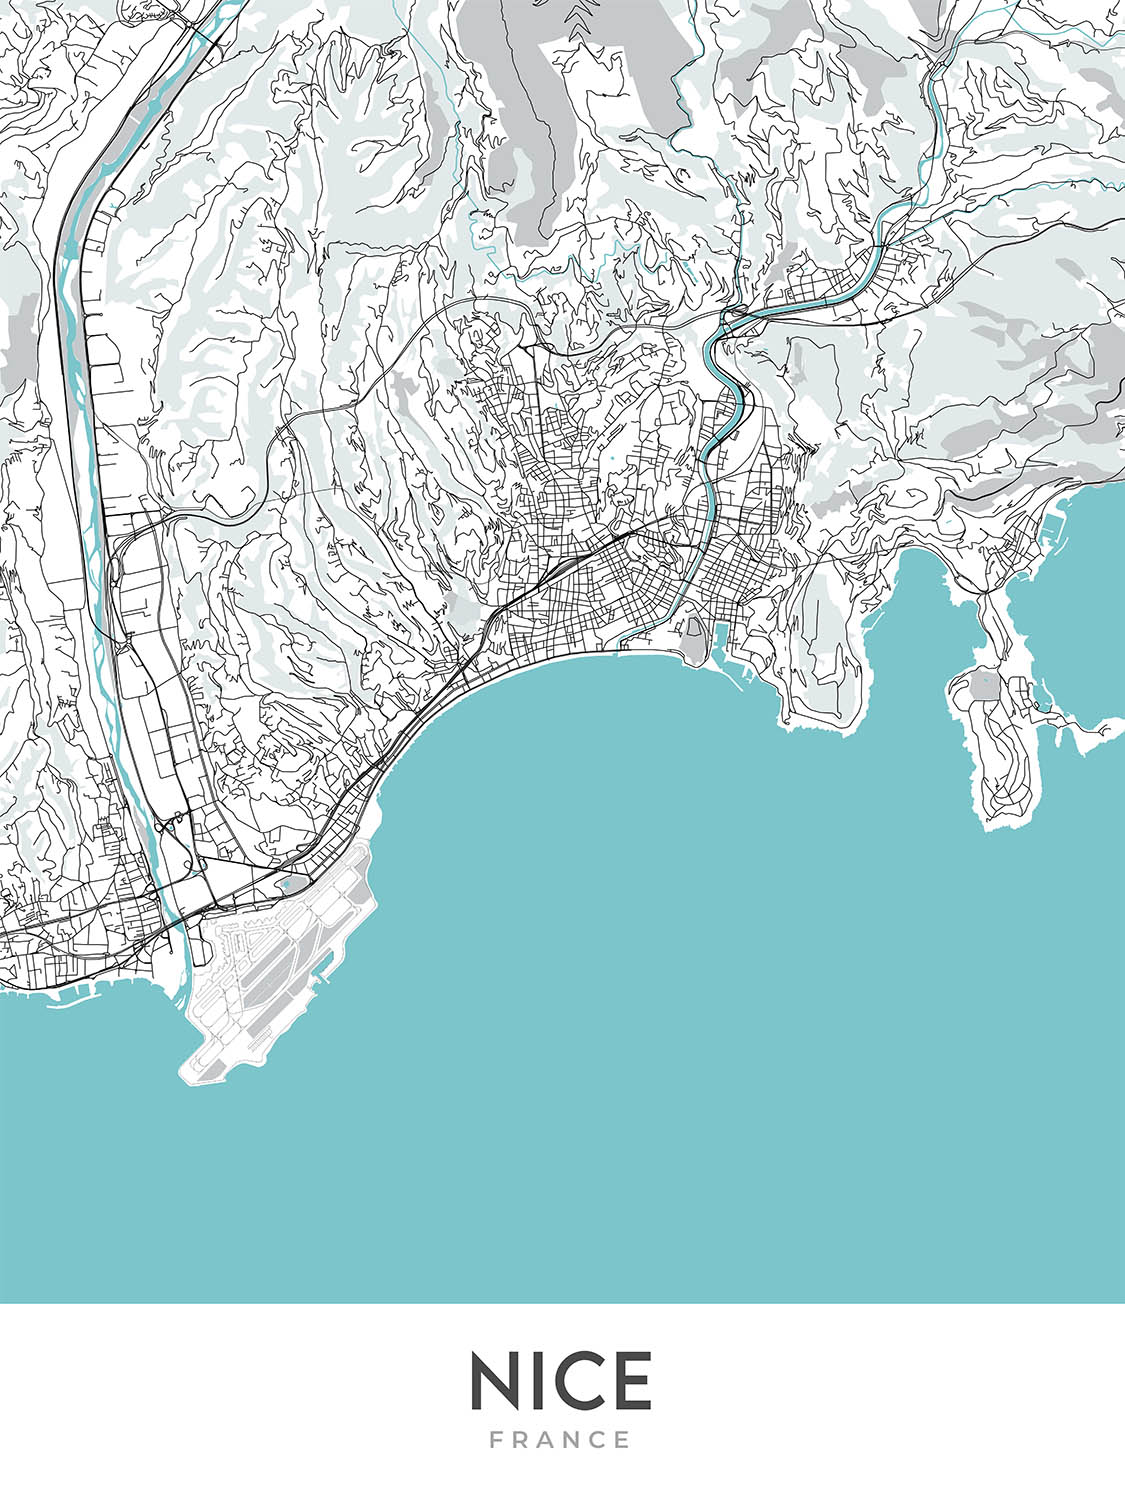 Plan de la ville moderne de Nice, France : vieille ville, colline du château, promenade des Anglais, port, cathédrale